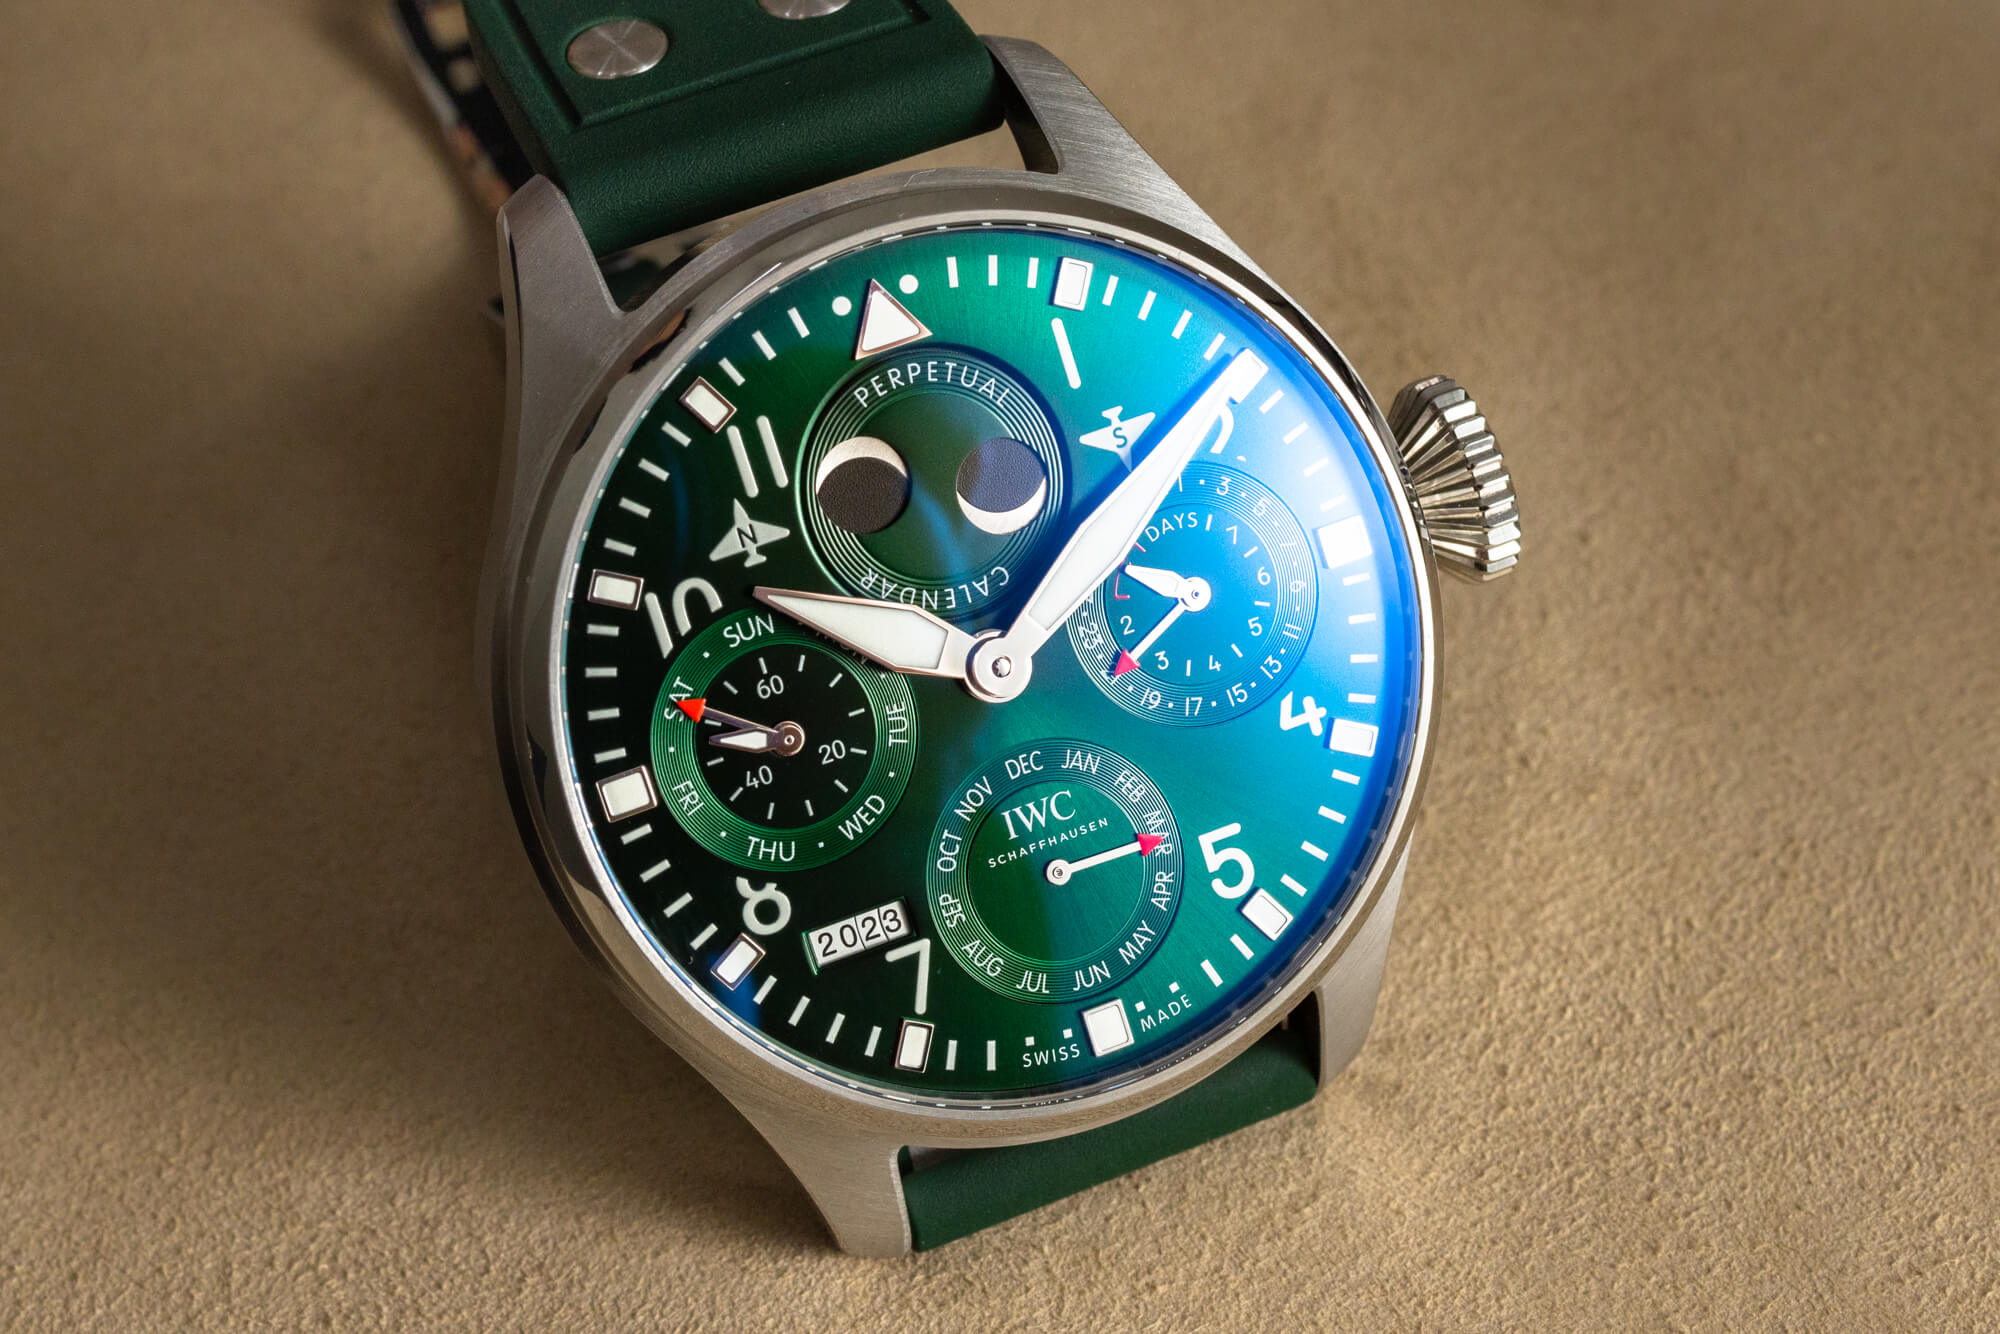 Обзор: IWC Big Pilot's Watch Perpetual Calendar в зеленом цвете